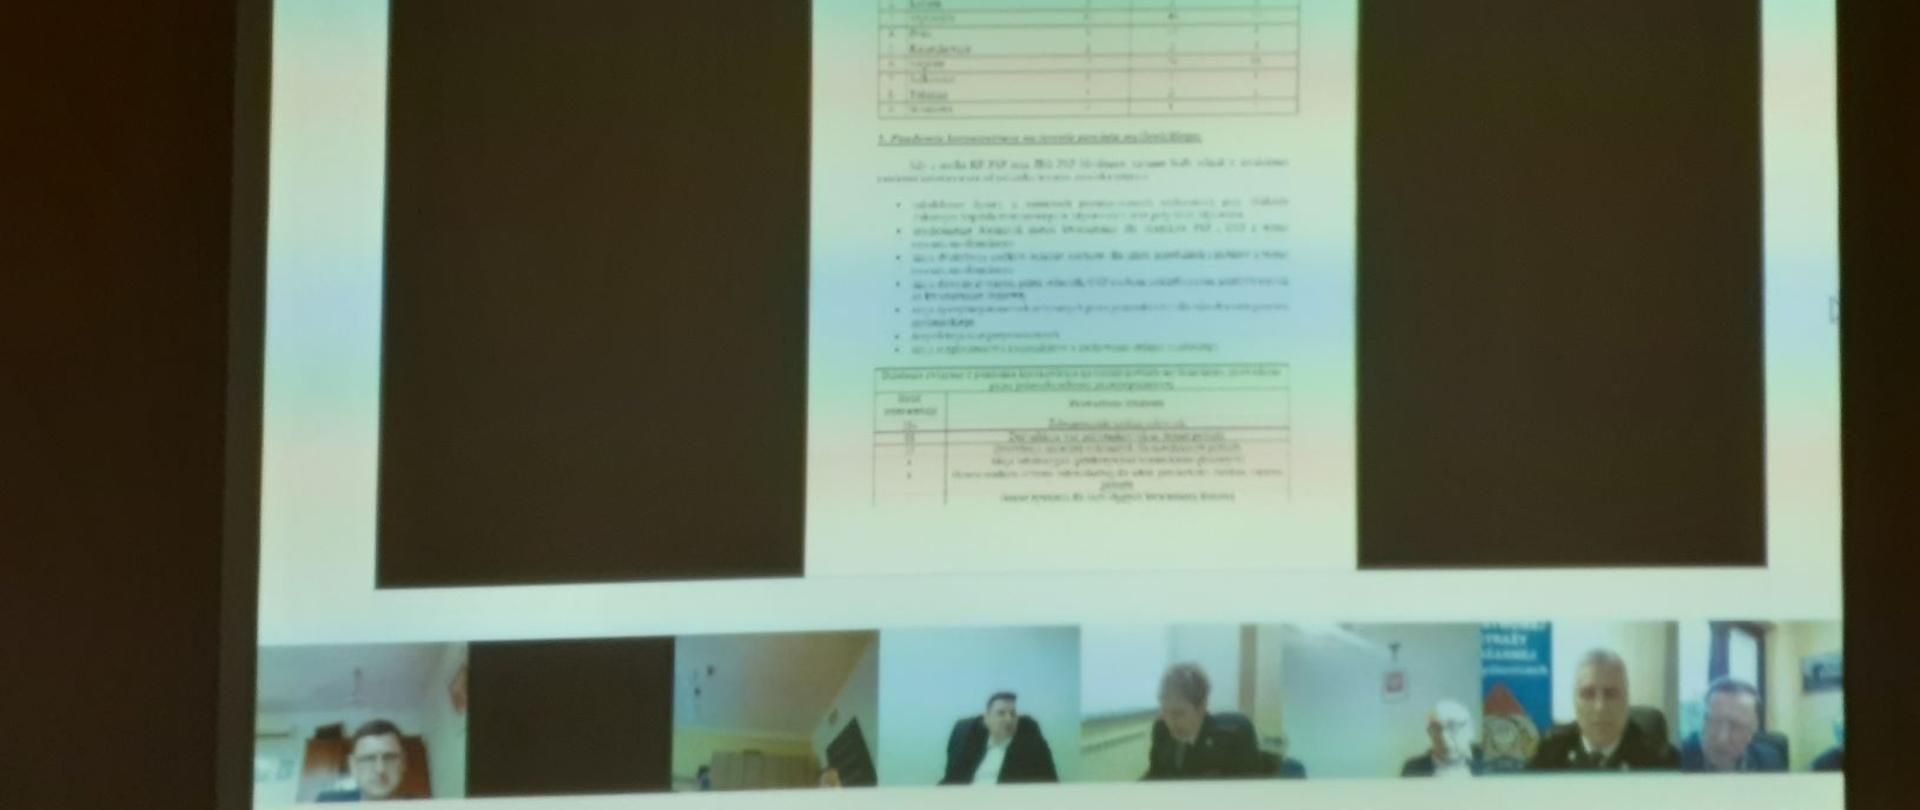 Zdjęcie obejmuje w środkowej części prezentację opisującą działalność KP PSP Myślenice. W dolnej części widoczne są osoby uczestniczące w wideokonferencji w swoich siedzibach.